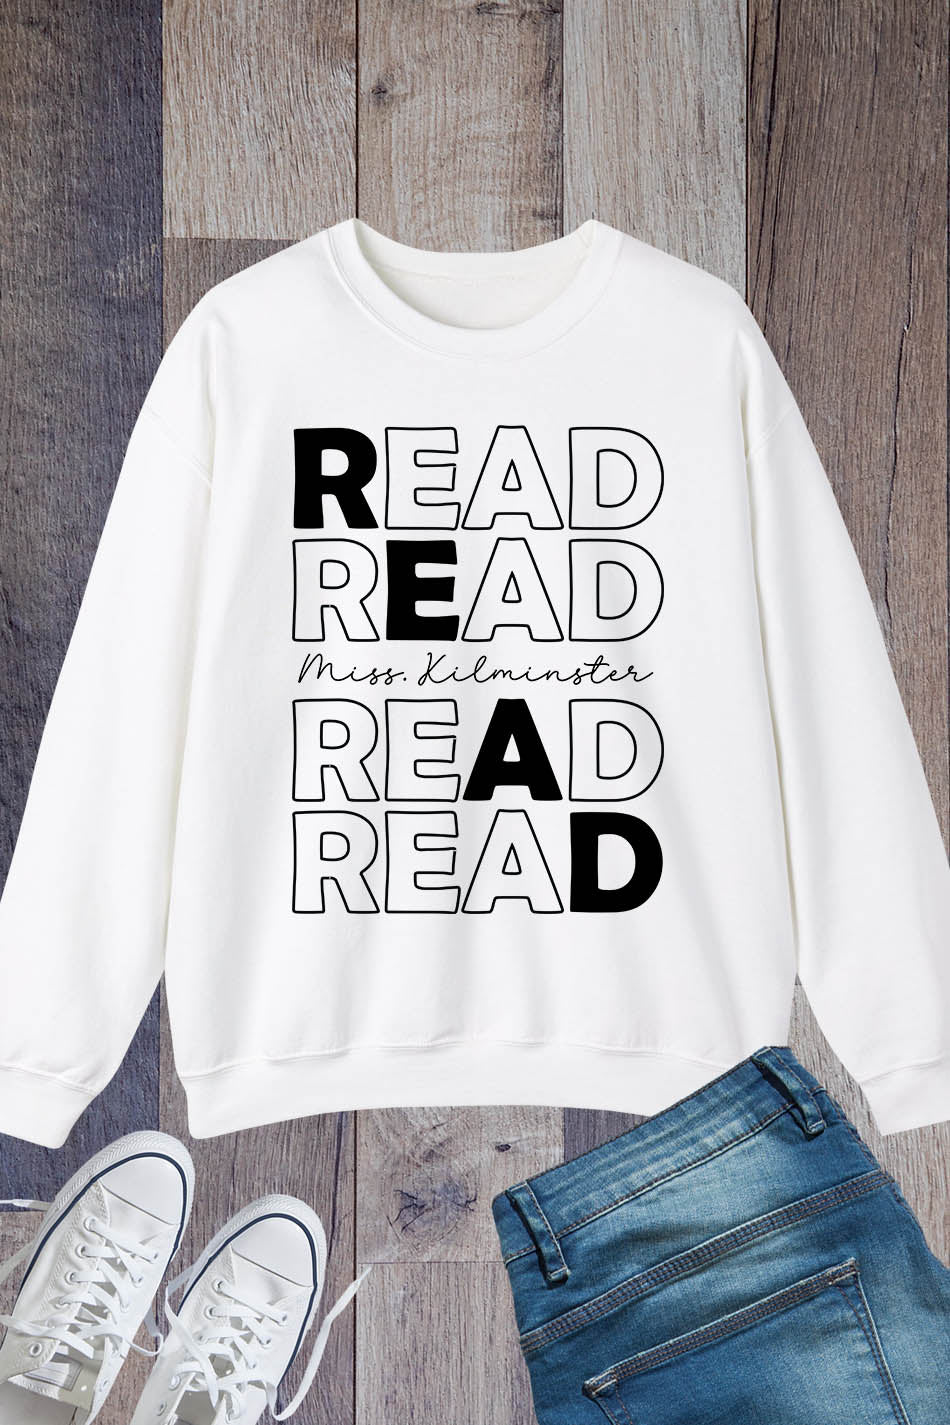 Read Sweatshirt Custom Librarian